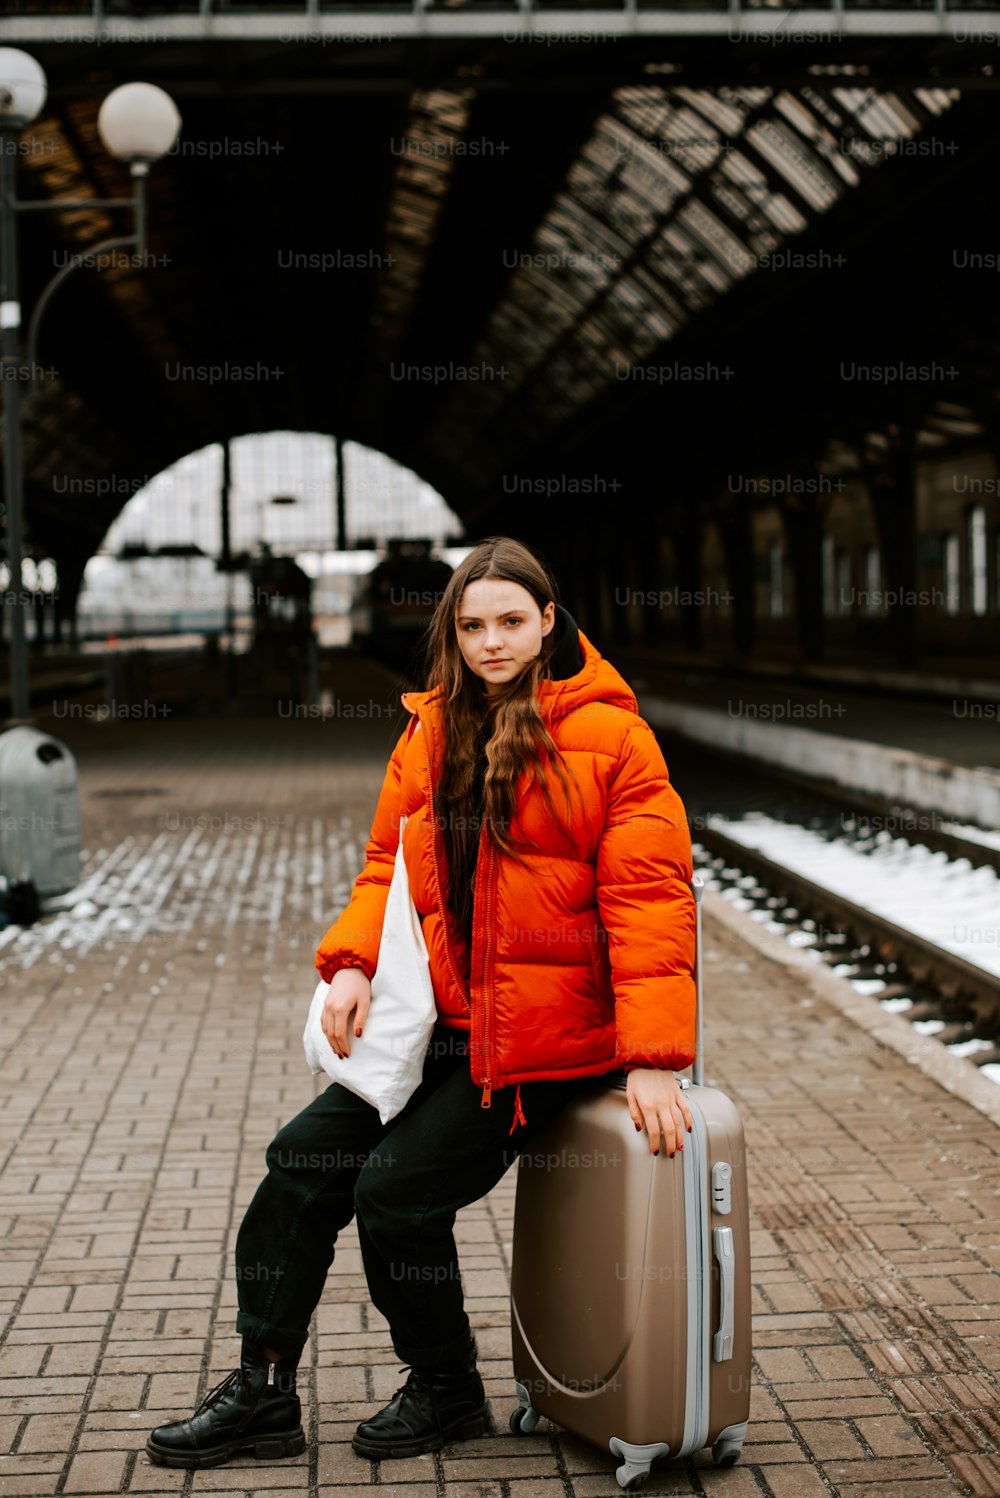 オレンジ色のジャケットを着た女性がスーツケースに座っている